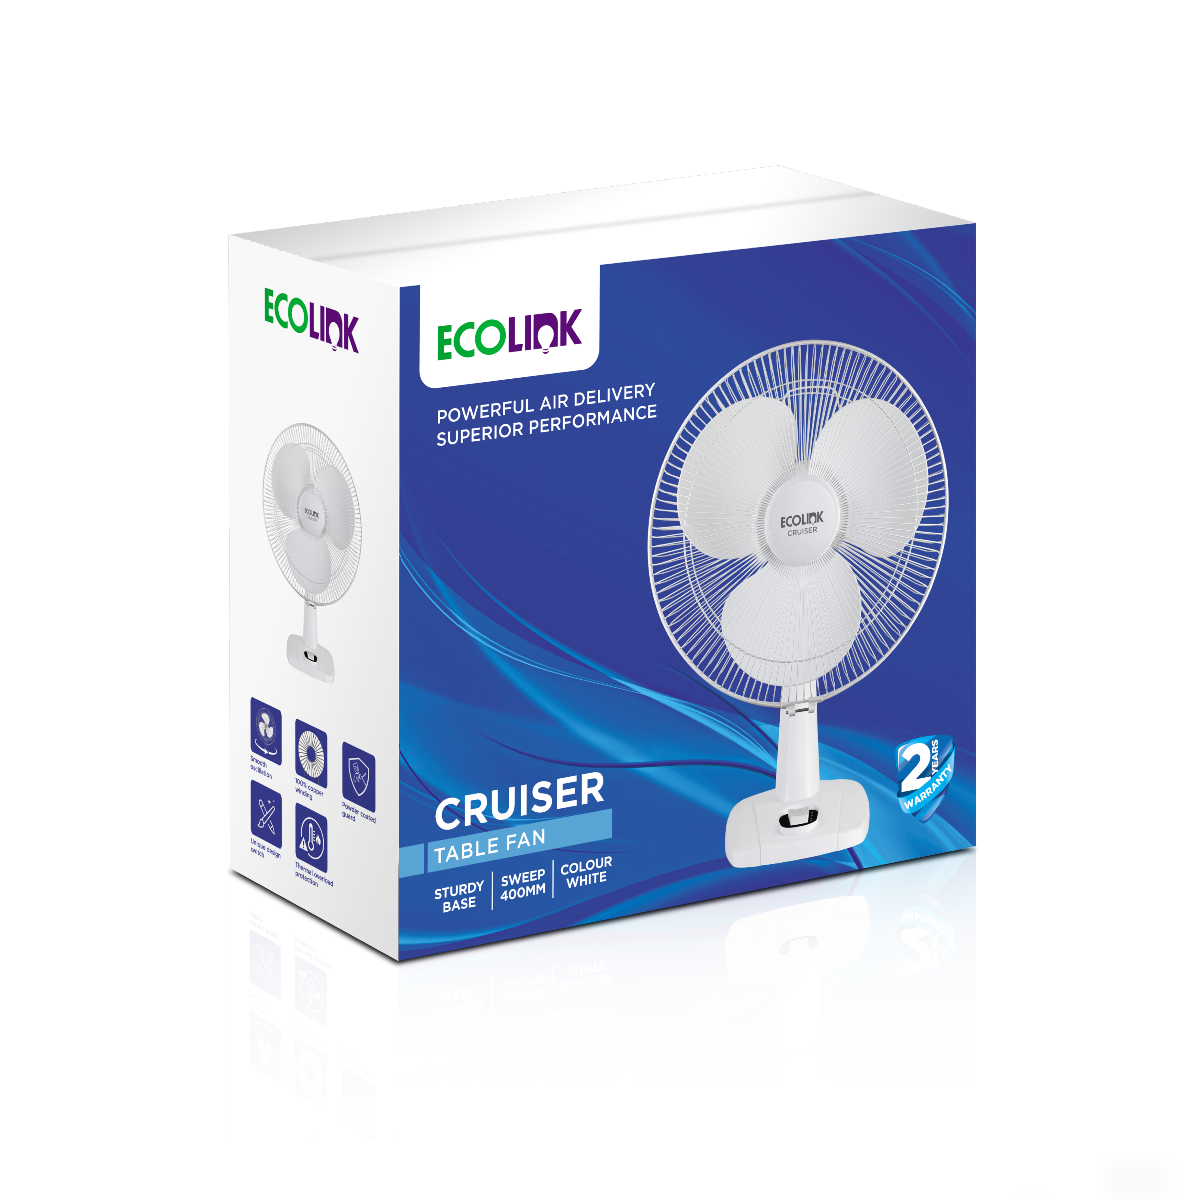 EcoLink Cruiser Table fan (400 mm)